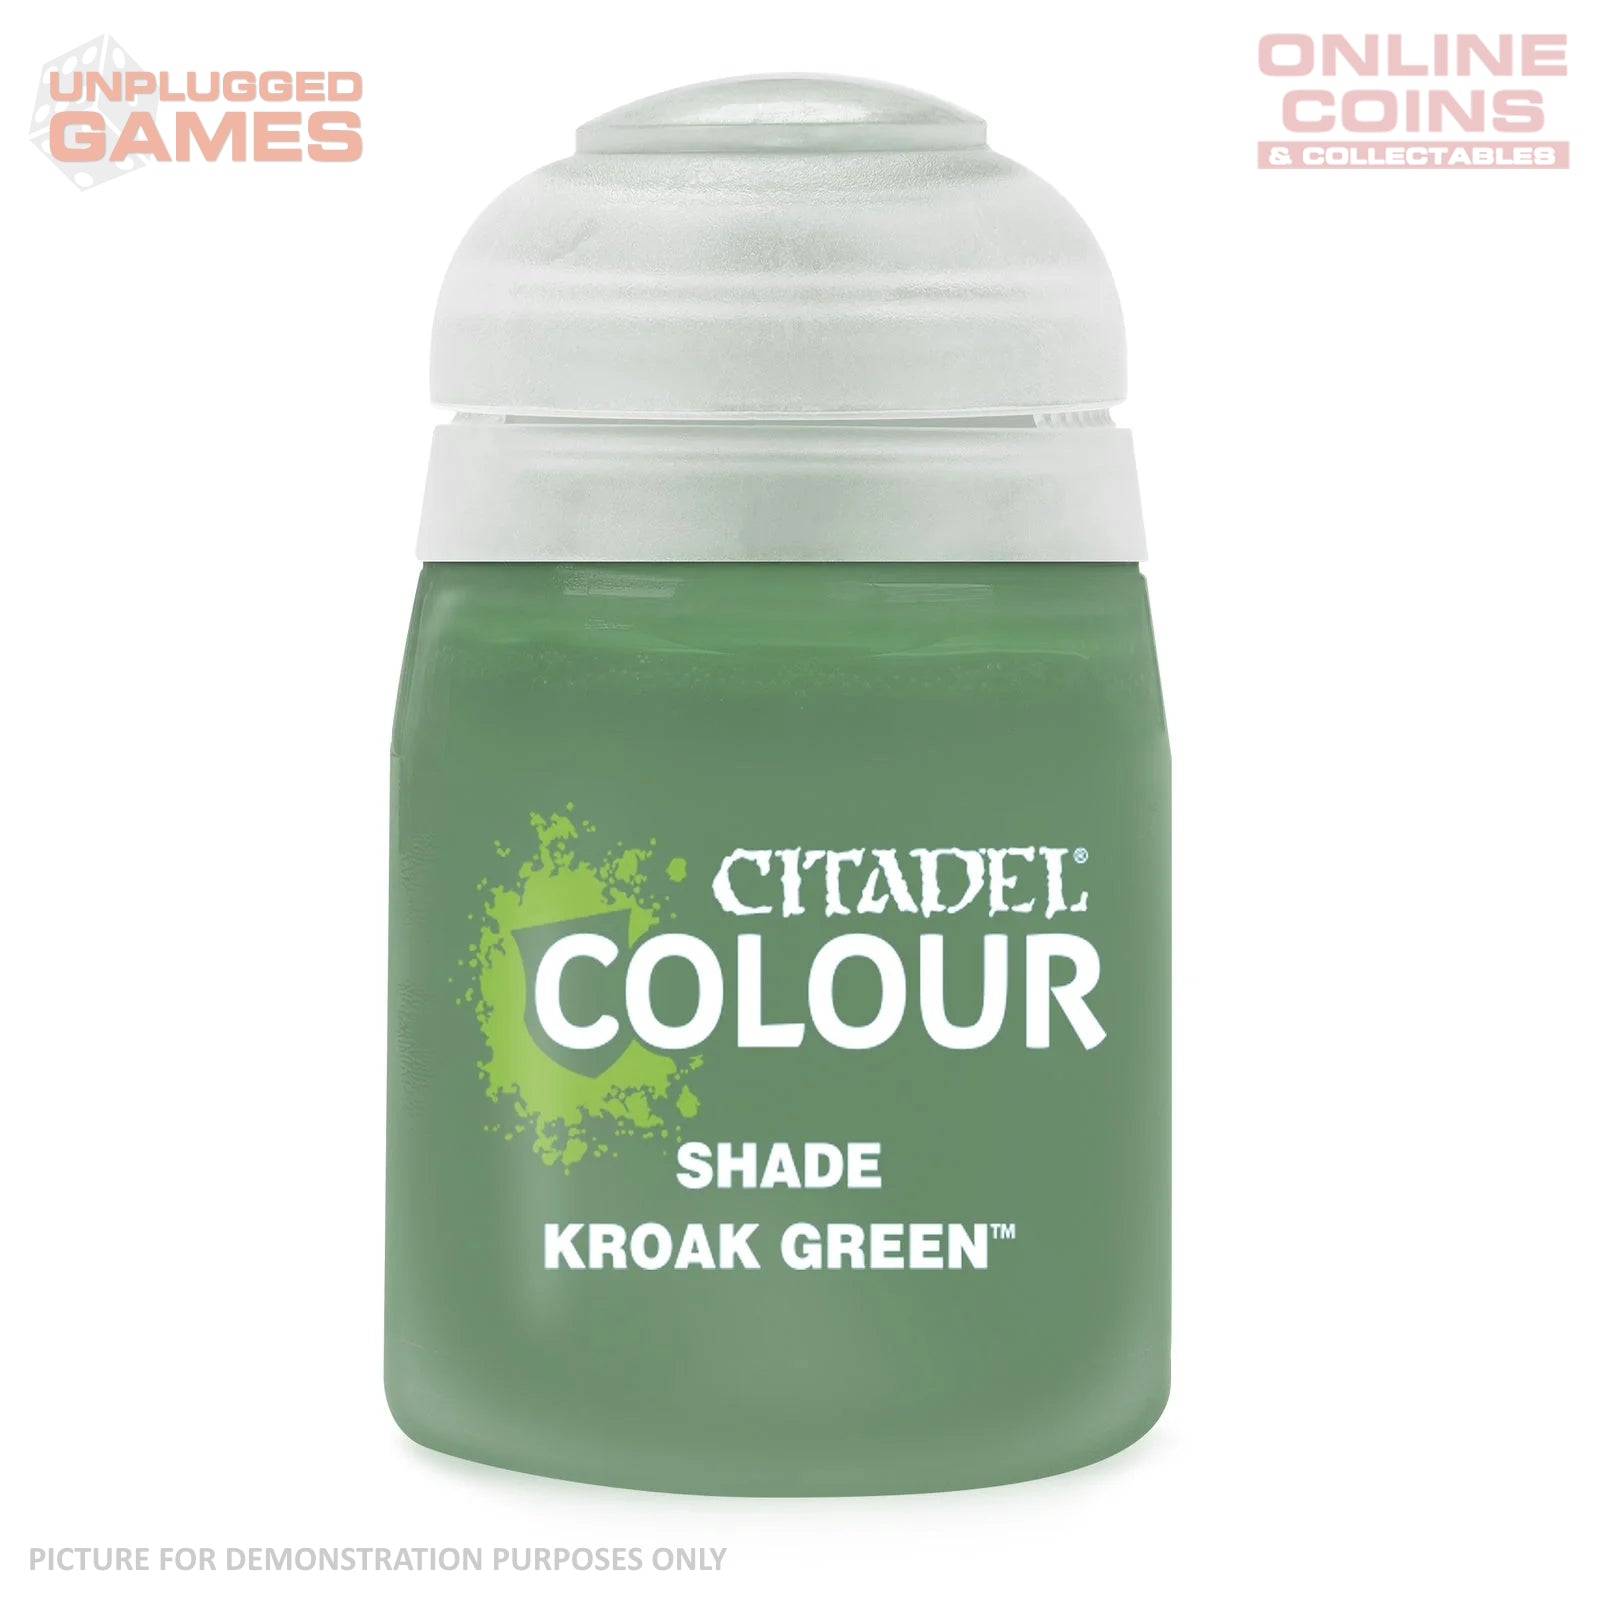 Citadel Shade - 24-29 Kroak Green